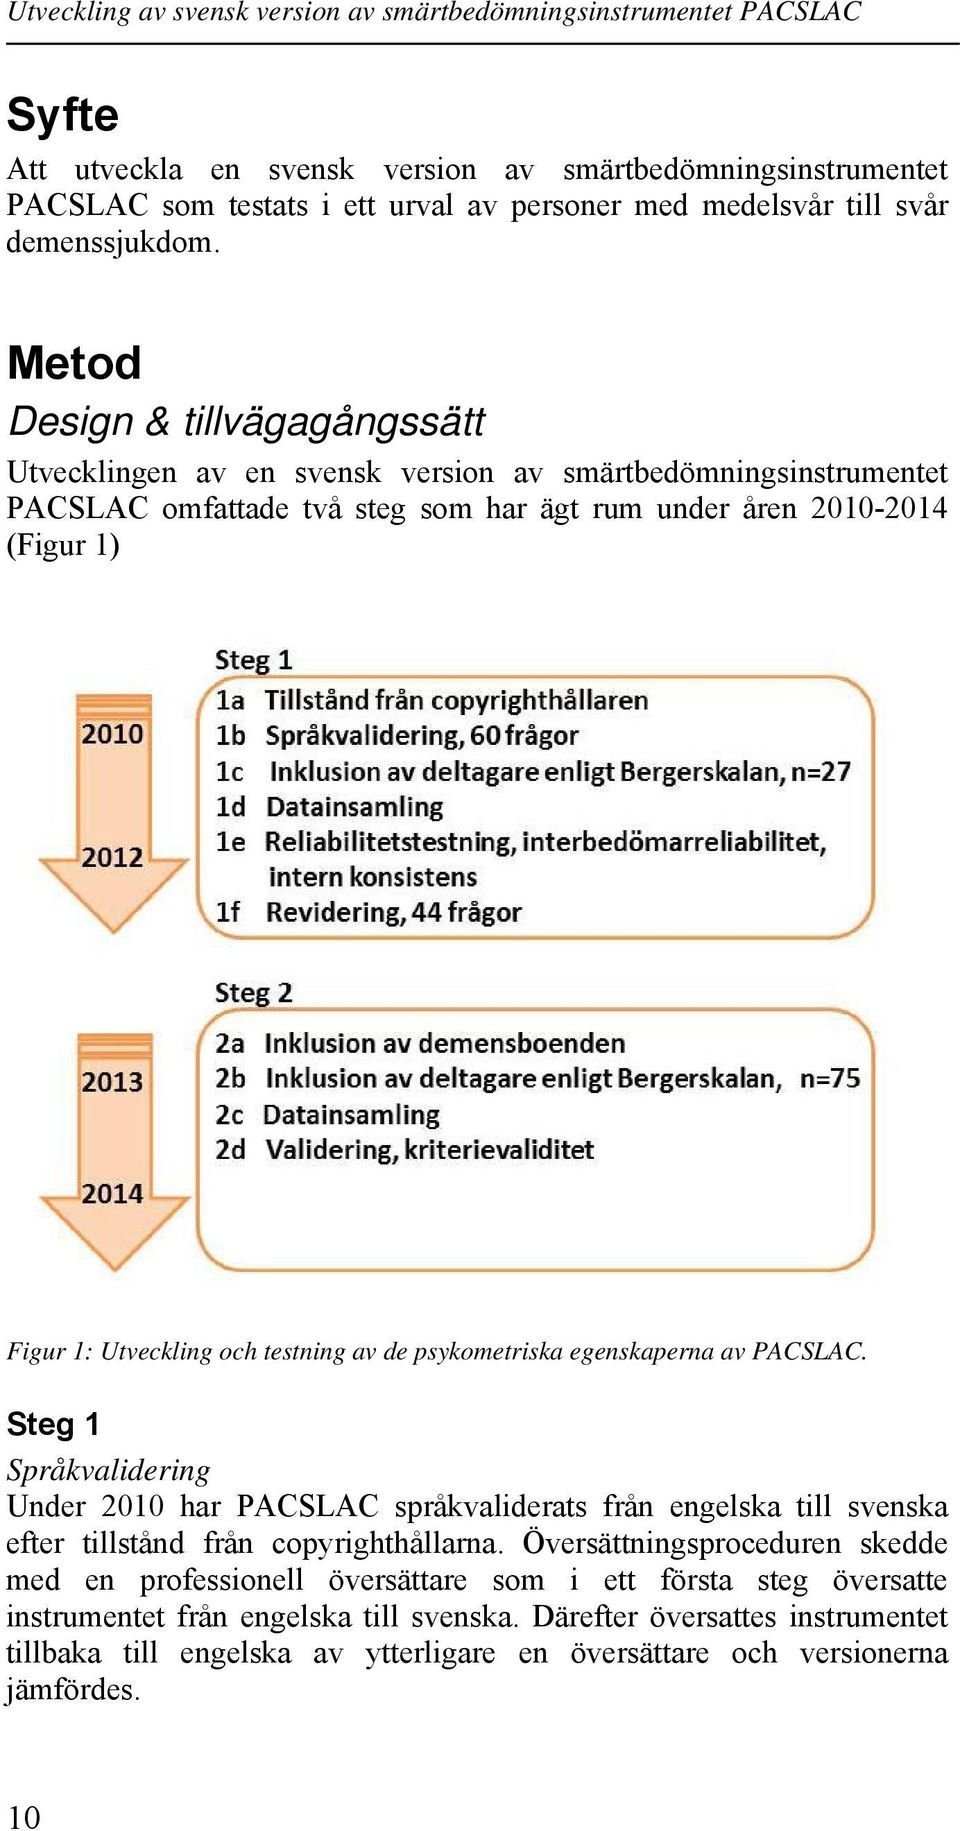 testning av de psykometriska egenskaperna av PACSLAC. Steg 1 Språkvalidering Under 2010 har PACSLAC språkvaliderats från engelska till svenska efter tillstånd från copyrighthållarna.